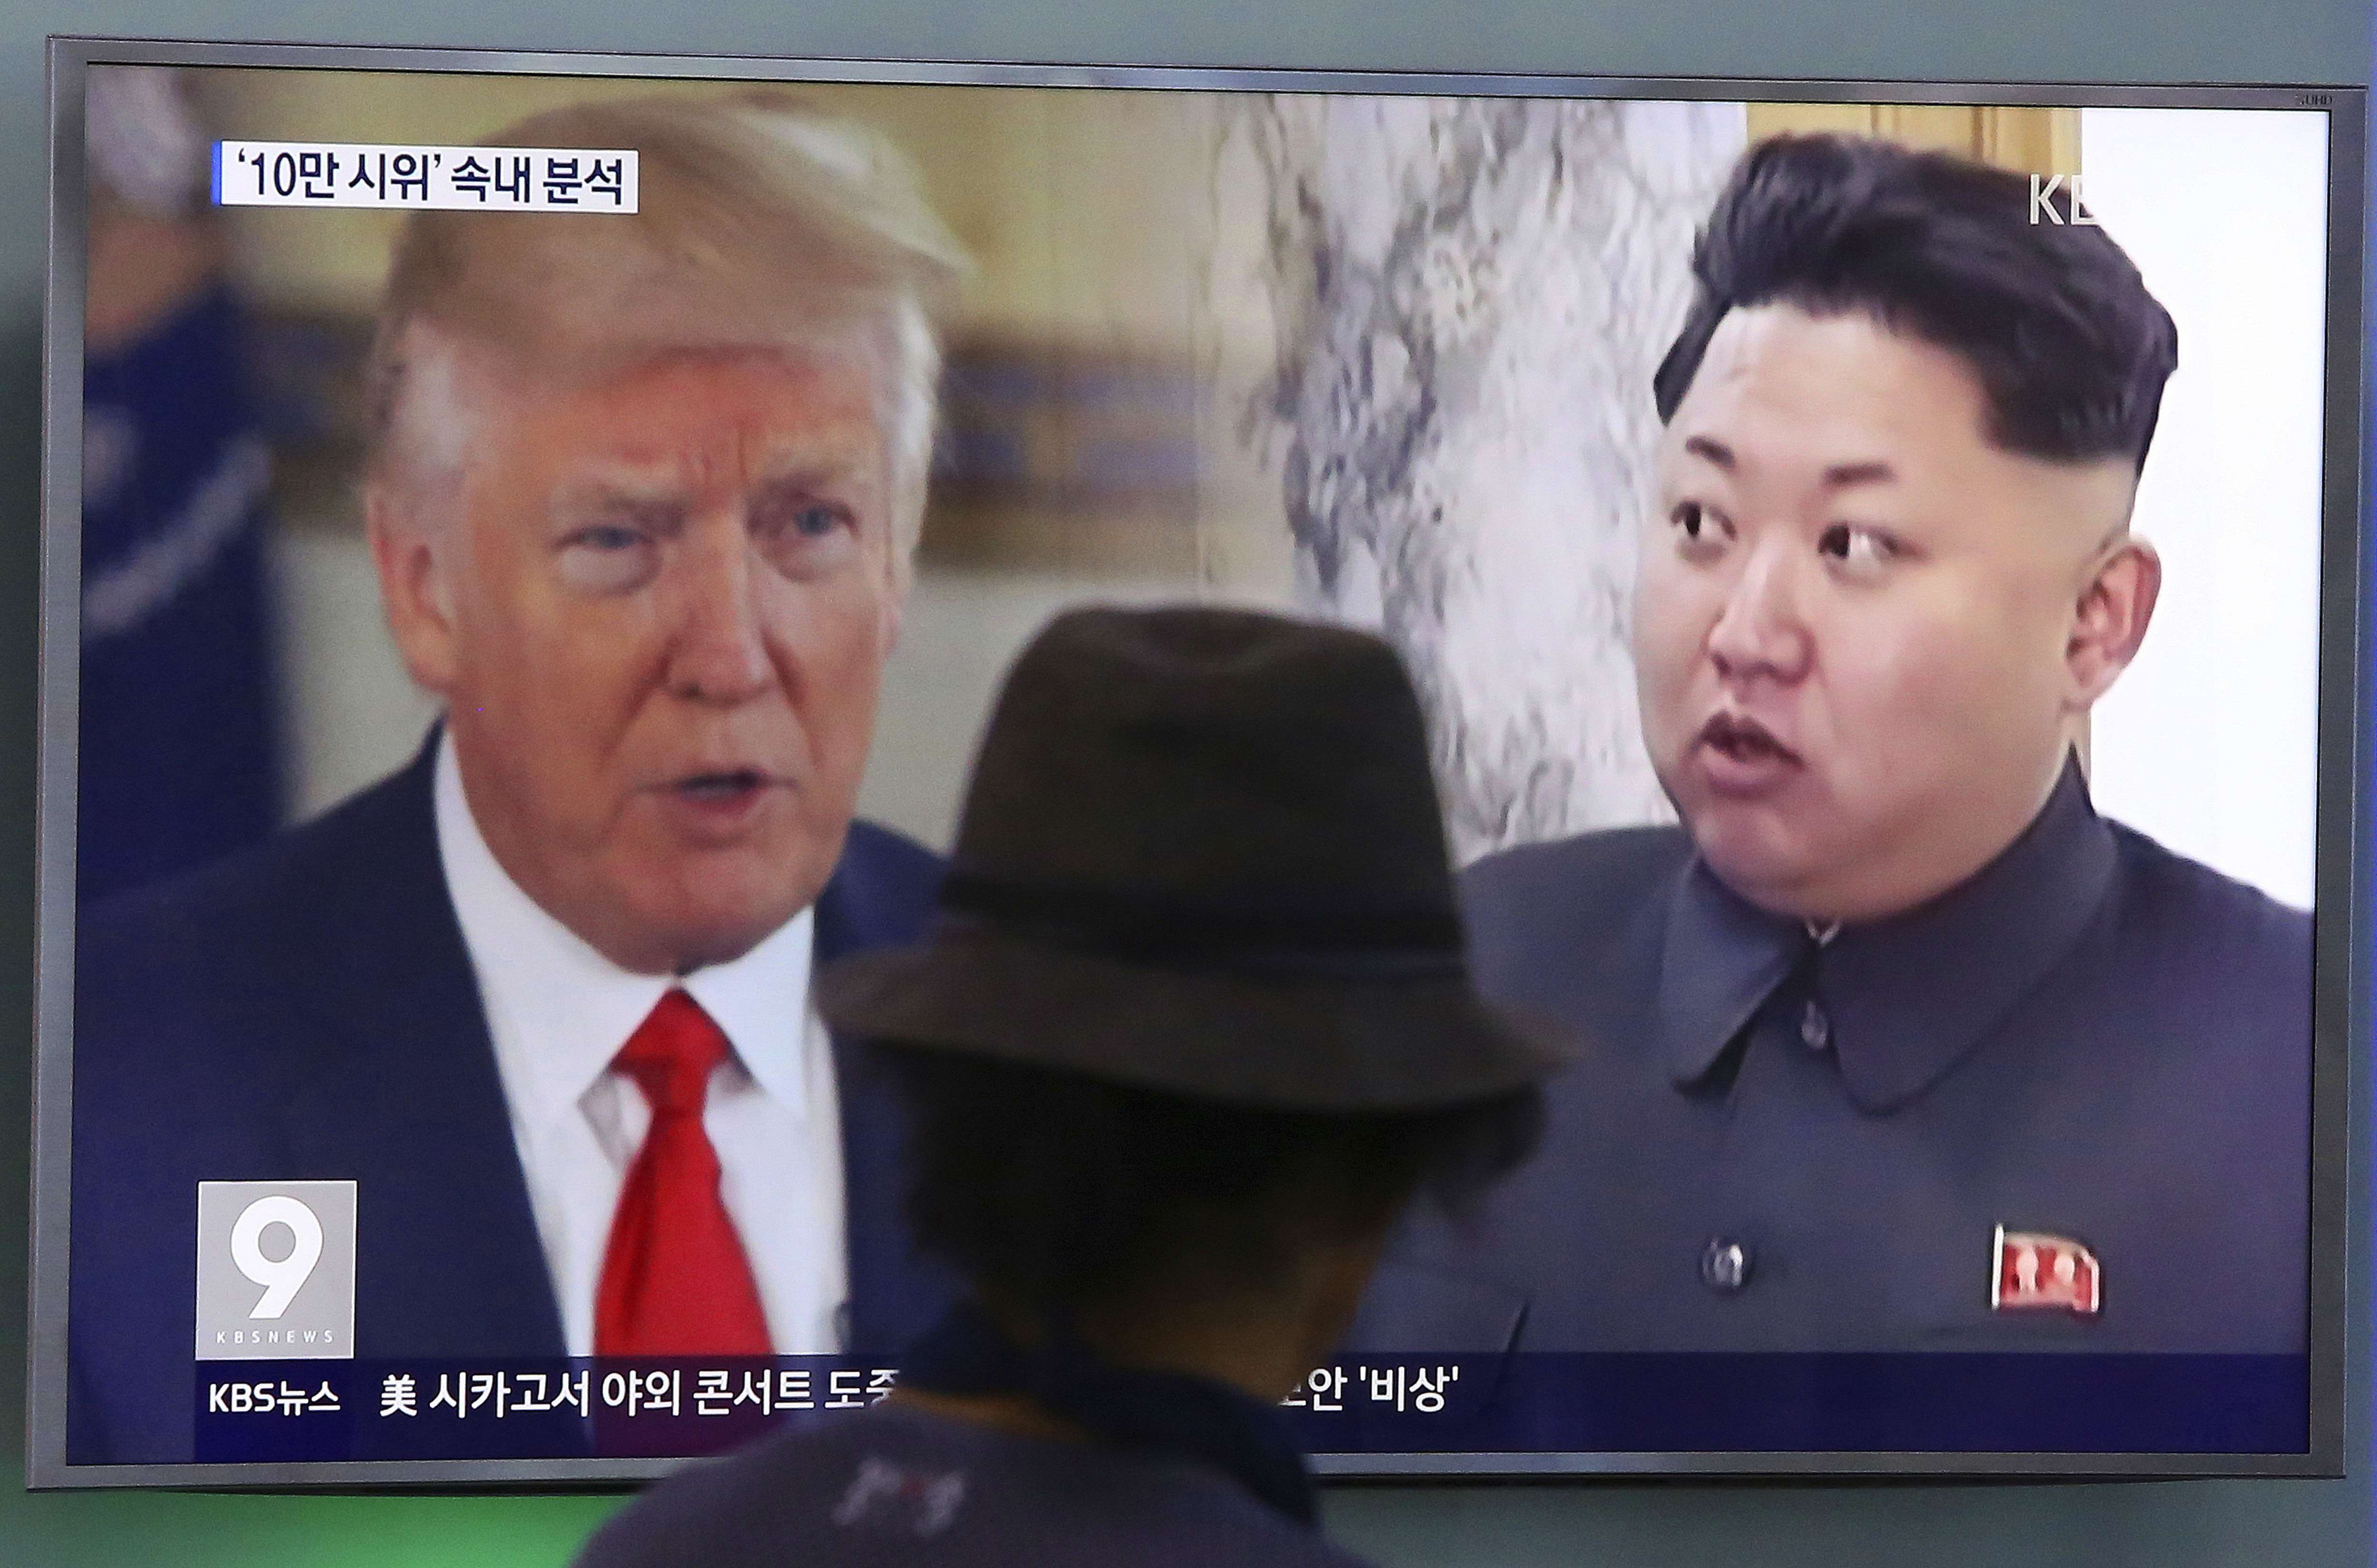 Un hombre mira una pantalla de televisión que muestra al presidente estadounidense Donald Trump y al líder norcoreano Kim Jong Un, a la derecha.  Foto: AP Archivo